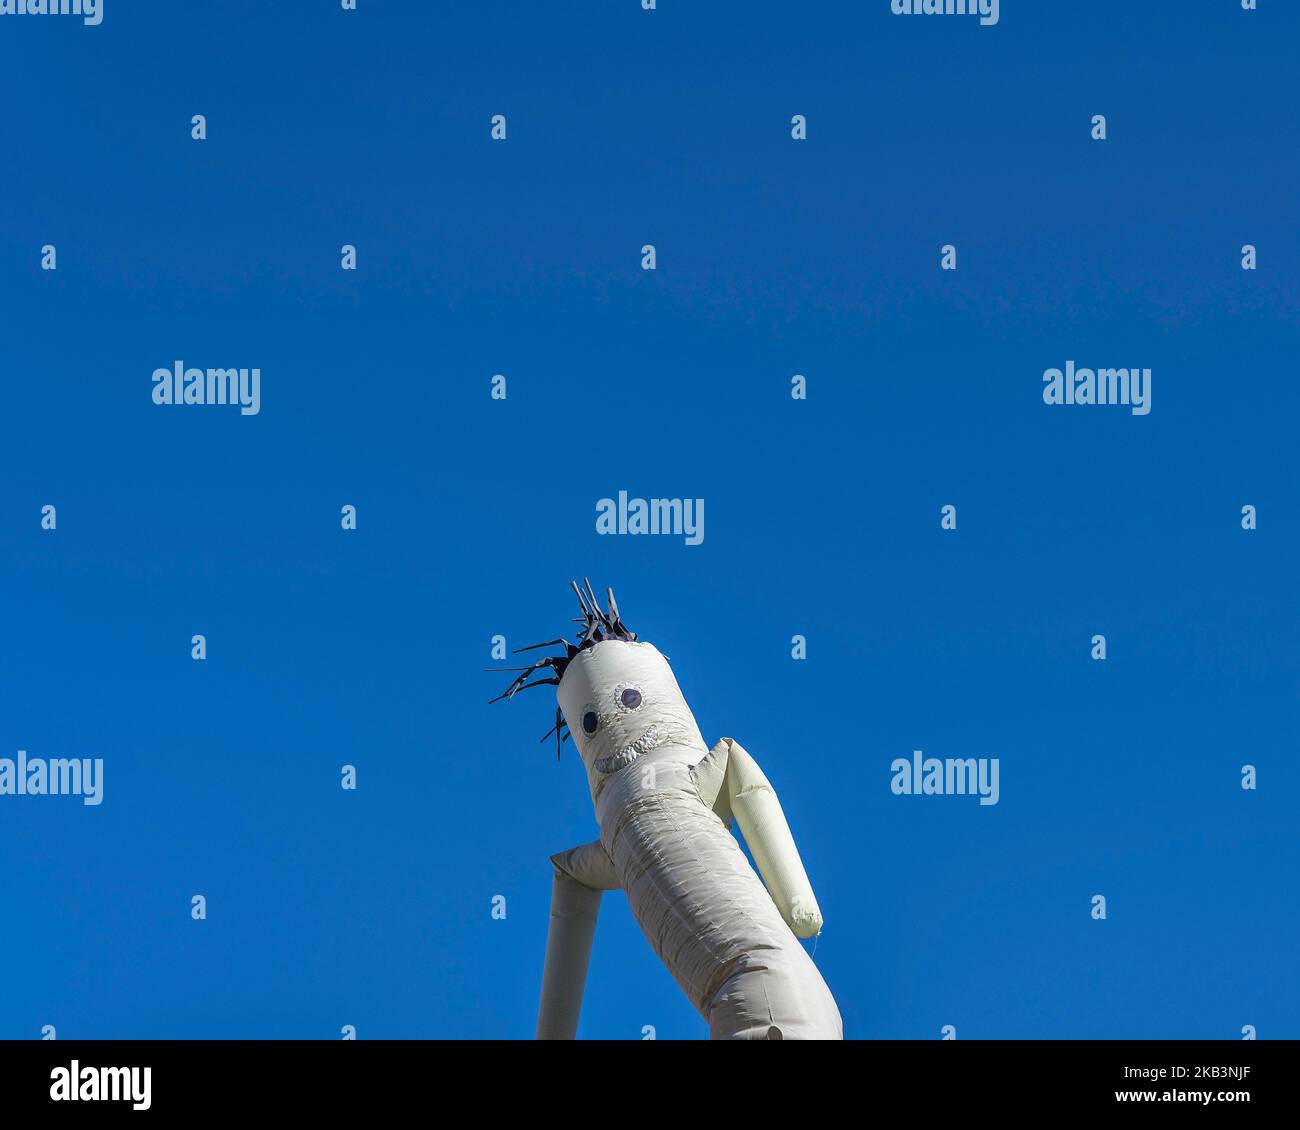 Ein grauer winkender Schlauchjunge bewegt sich gegen einen klaren blauen Himmel. Stockfoto